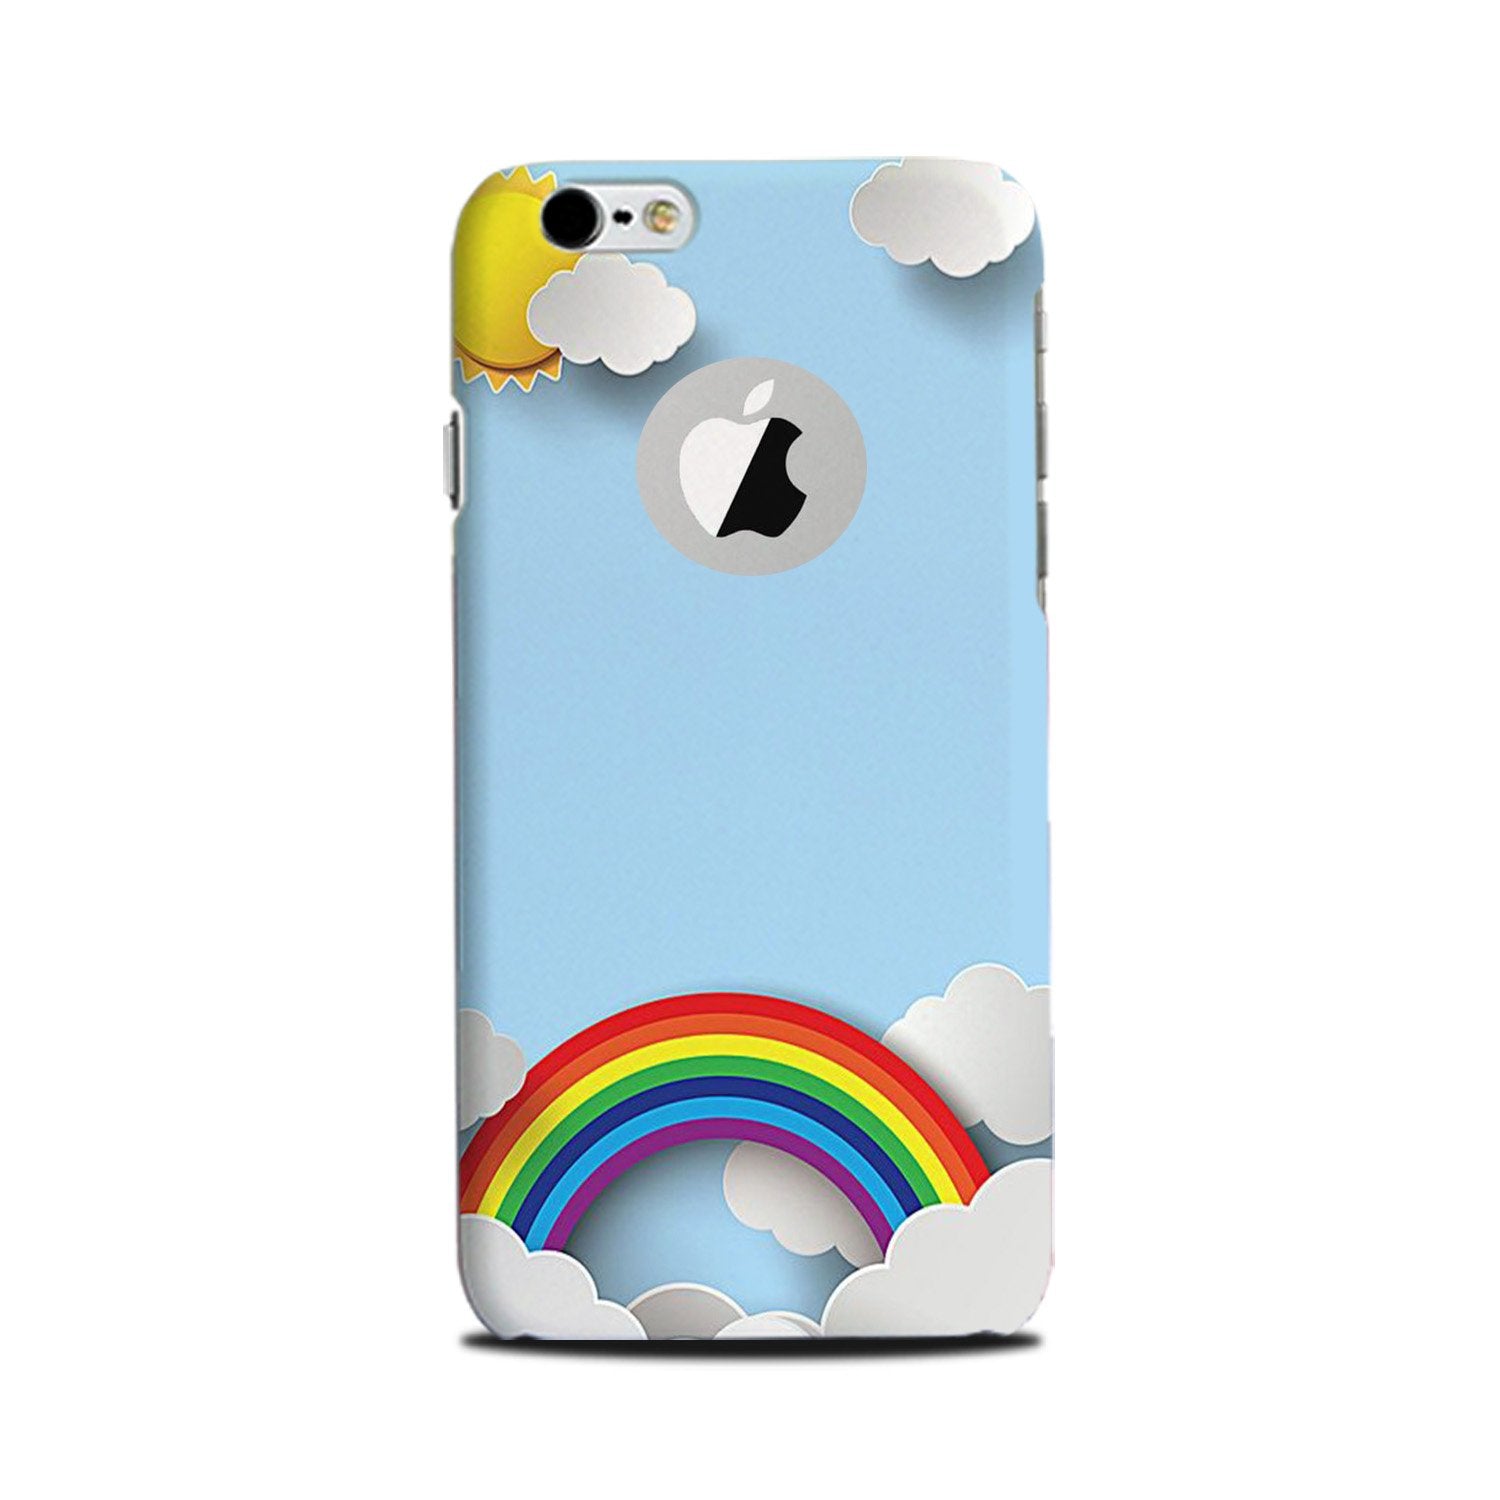 Rainbow Case for iPhone 6 Plus / 6s Plus logo cut  (Design No. 225)